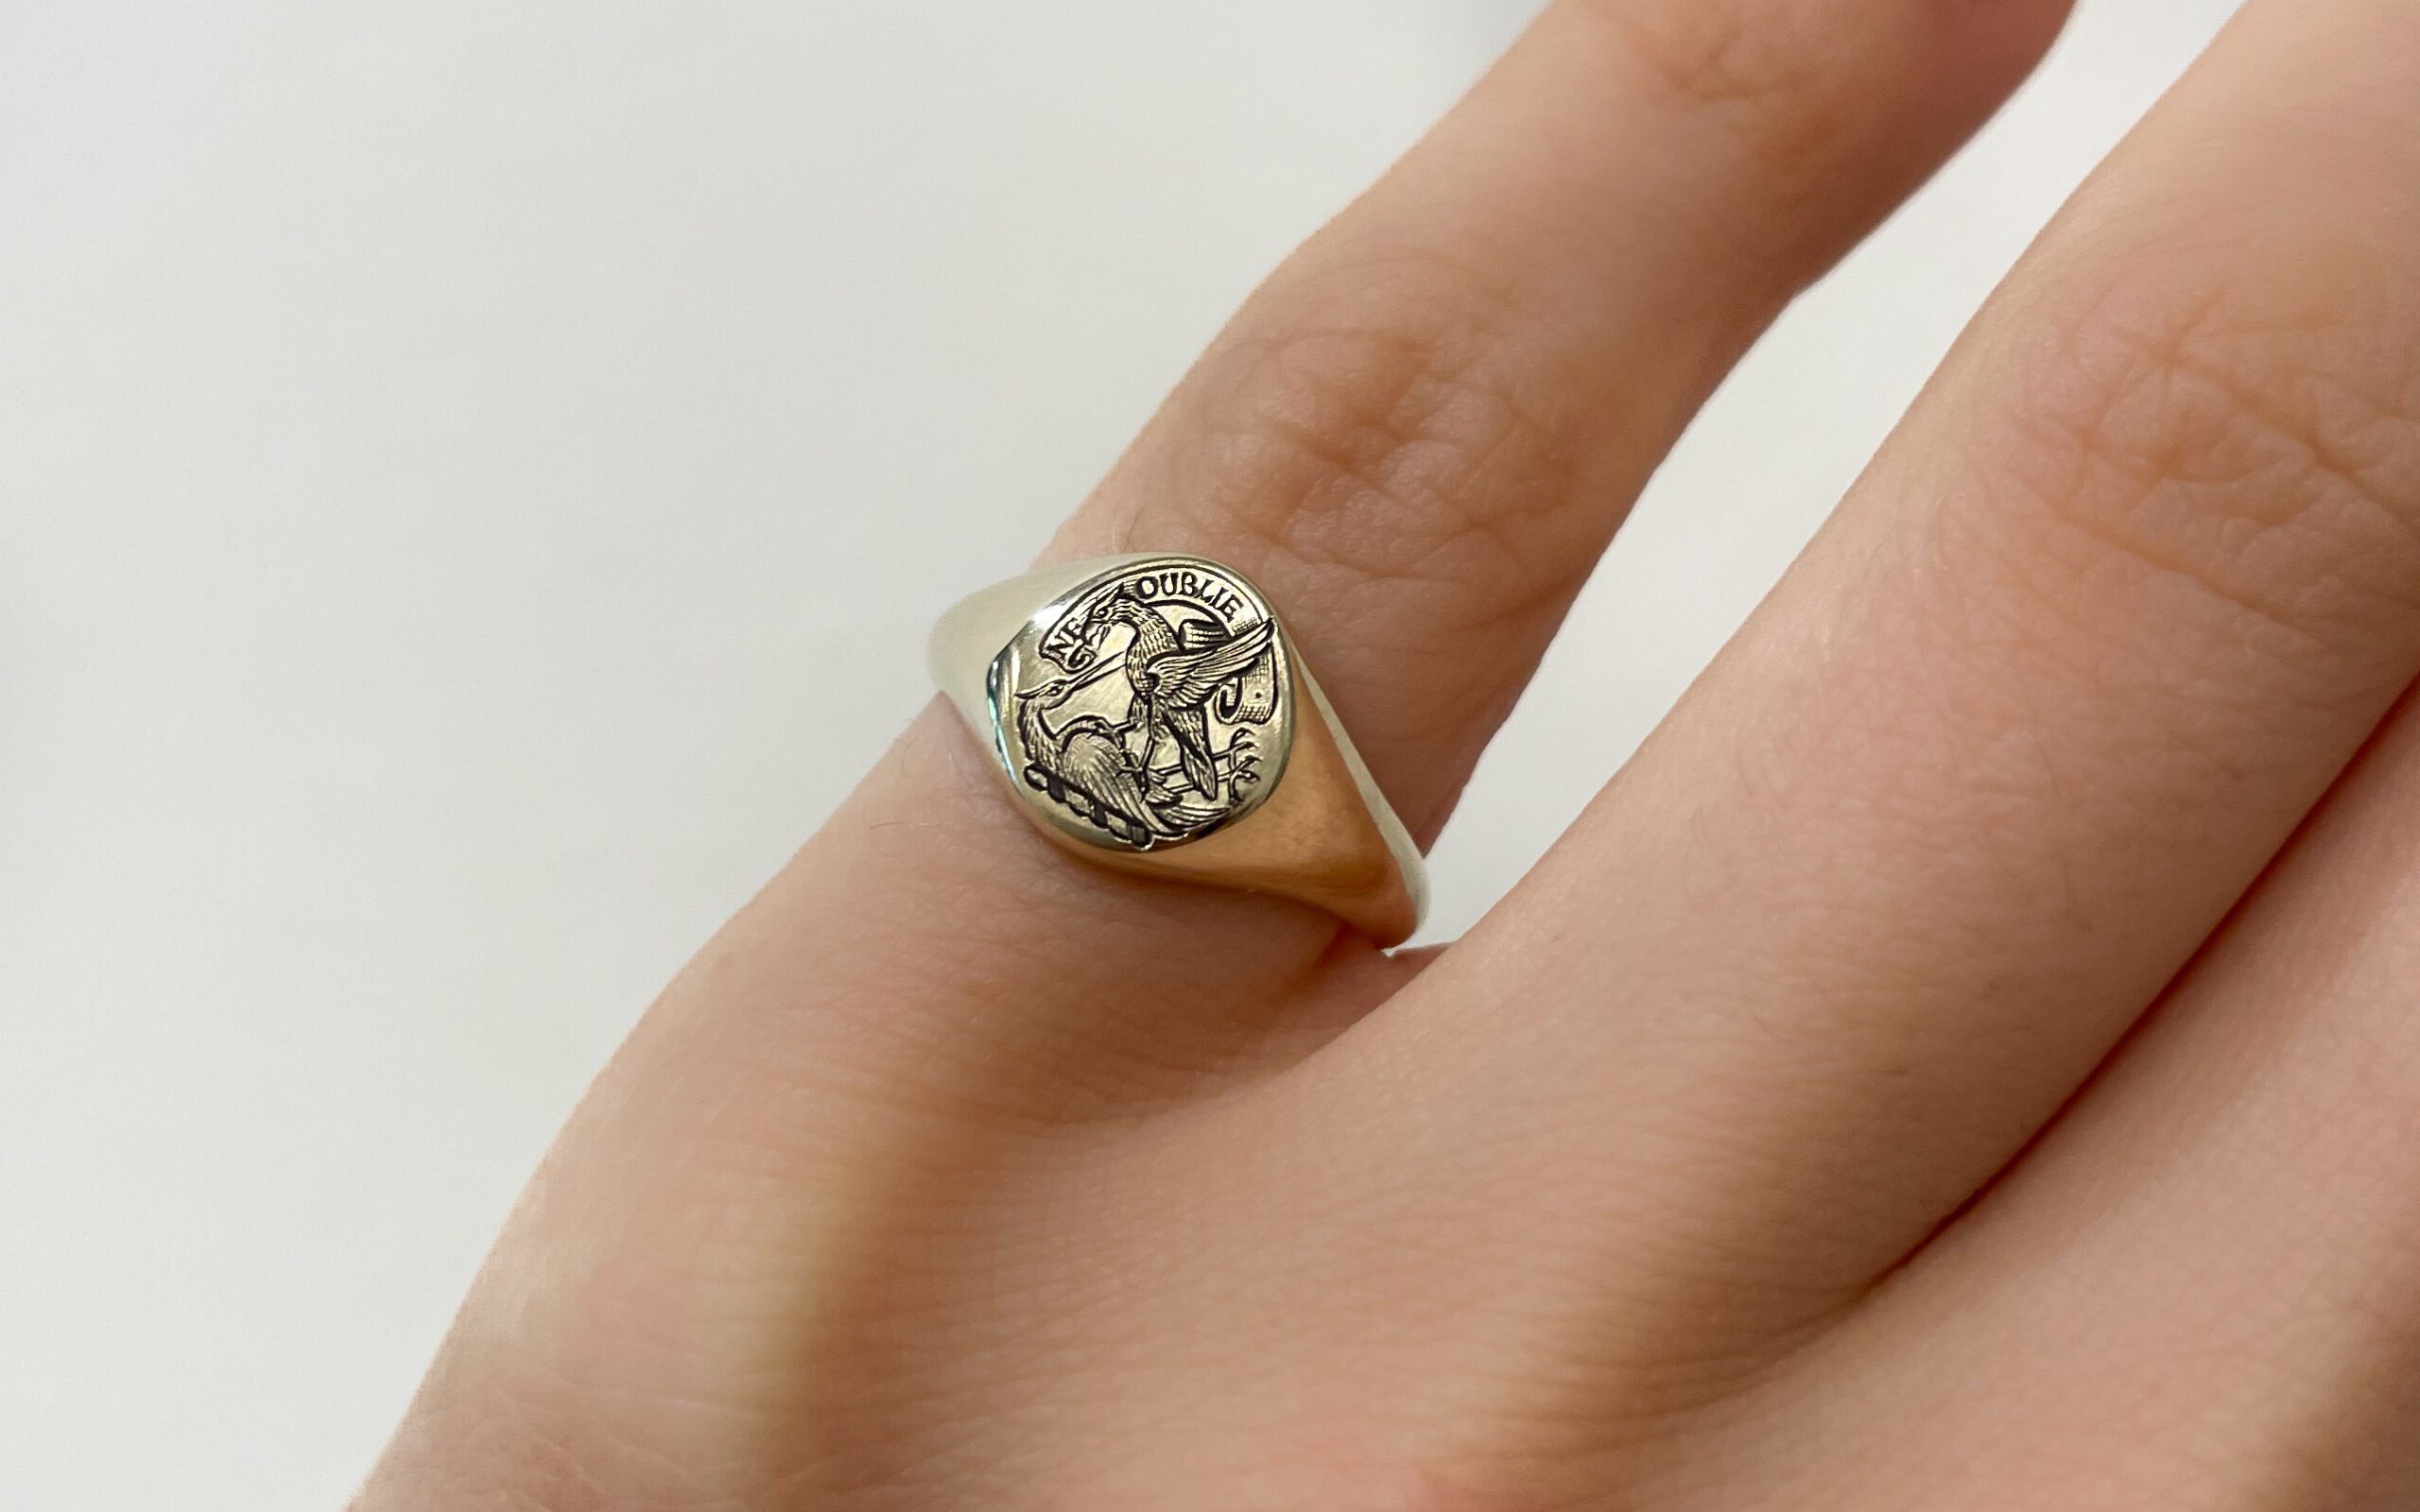 Crest engraved signet ring